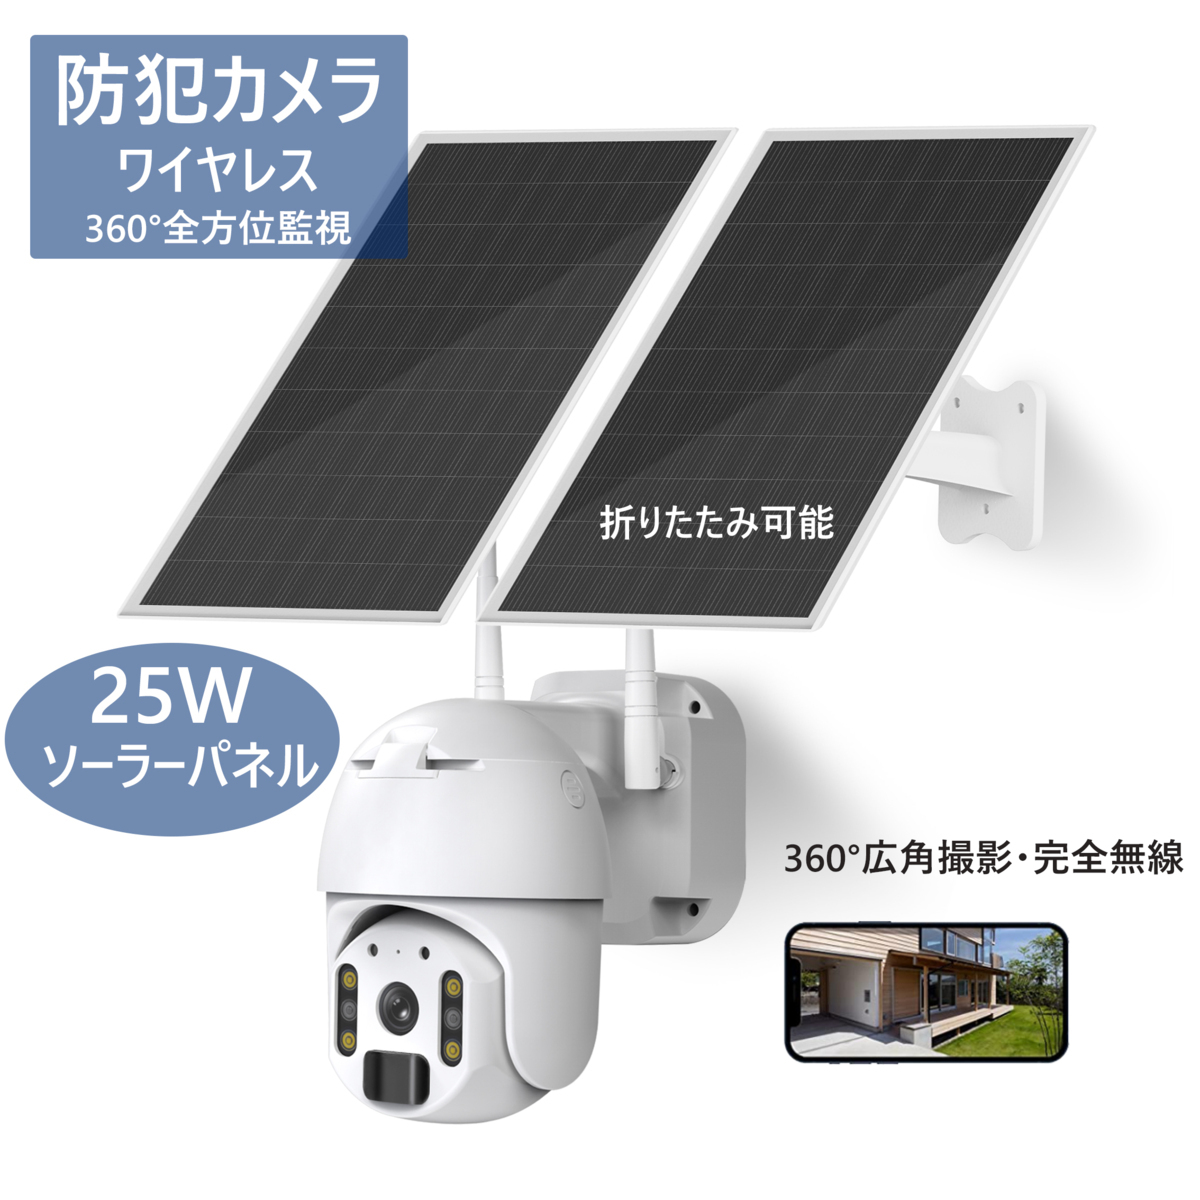 YISEMEYA 防犯カメラ ワイヤレス監視カメラ ソーラー太陽光電池式完全 